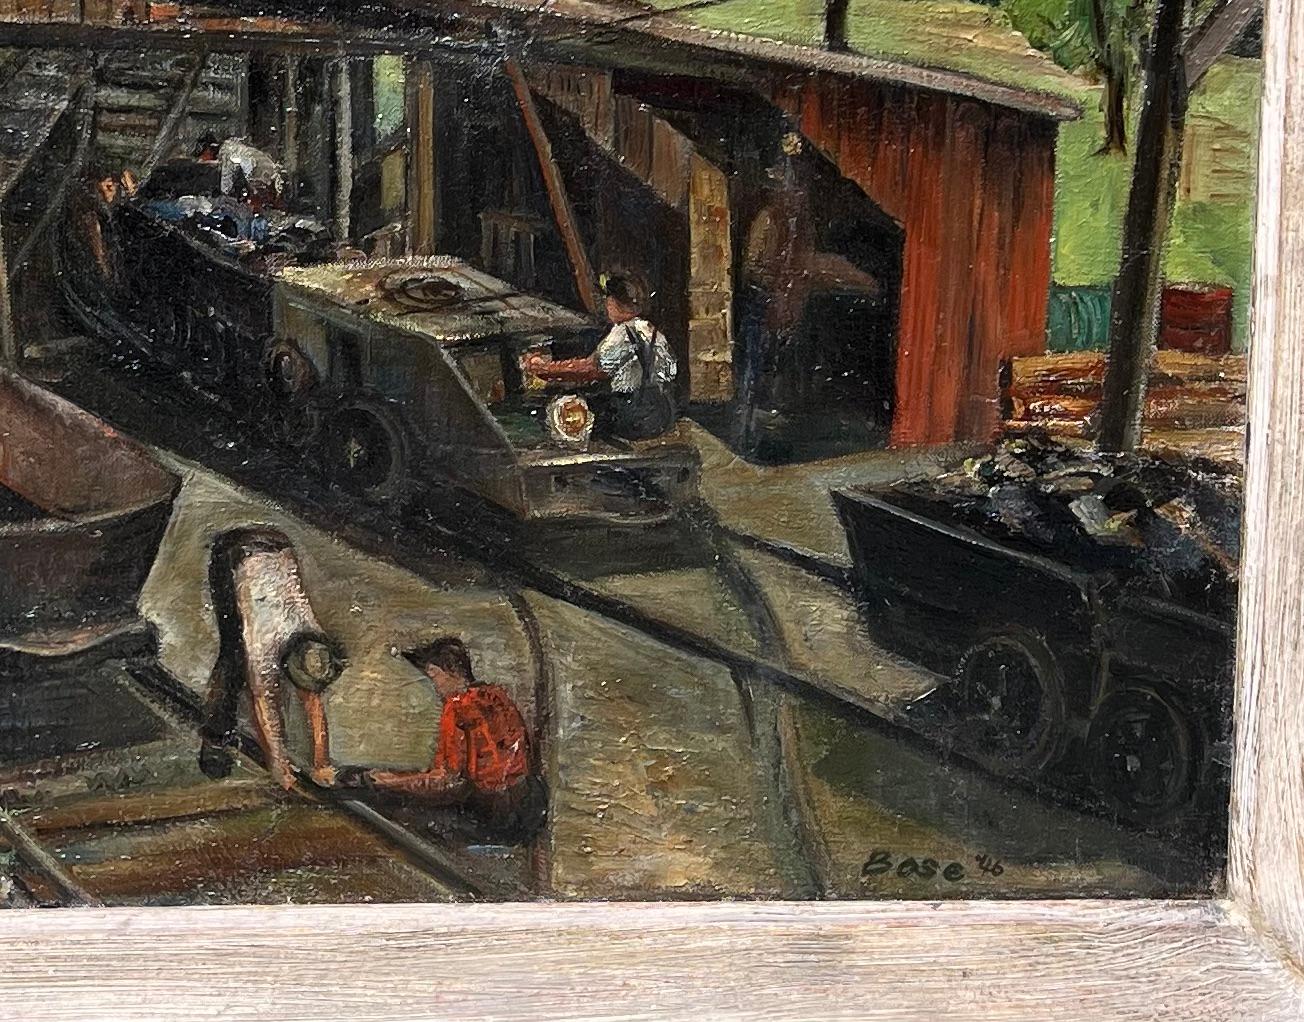 Chemin de fer industriel WPA Milieu du XXe siècle Scène américaine Rurale Réalisme moderne

Grande peinture de genre à l'huile sur toile représentant des ouvriers travaillant sur un chemin de fer, avec un paysage rural en arrière-plan sous un ciel